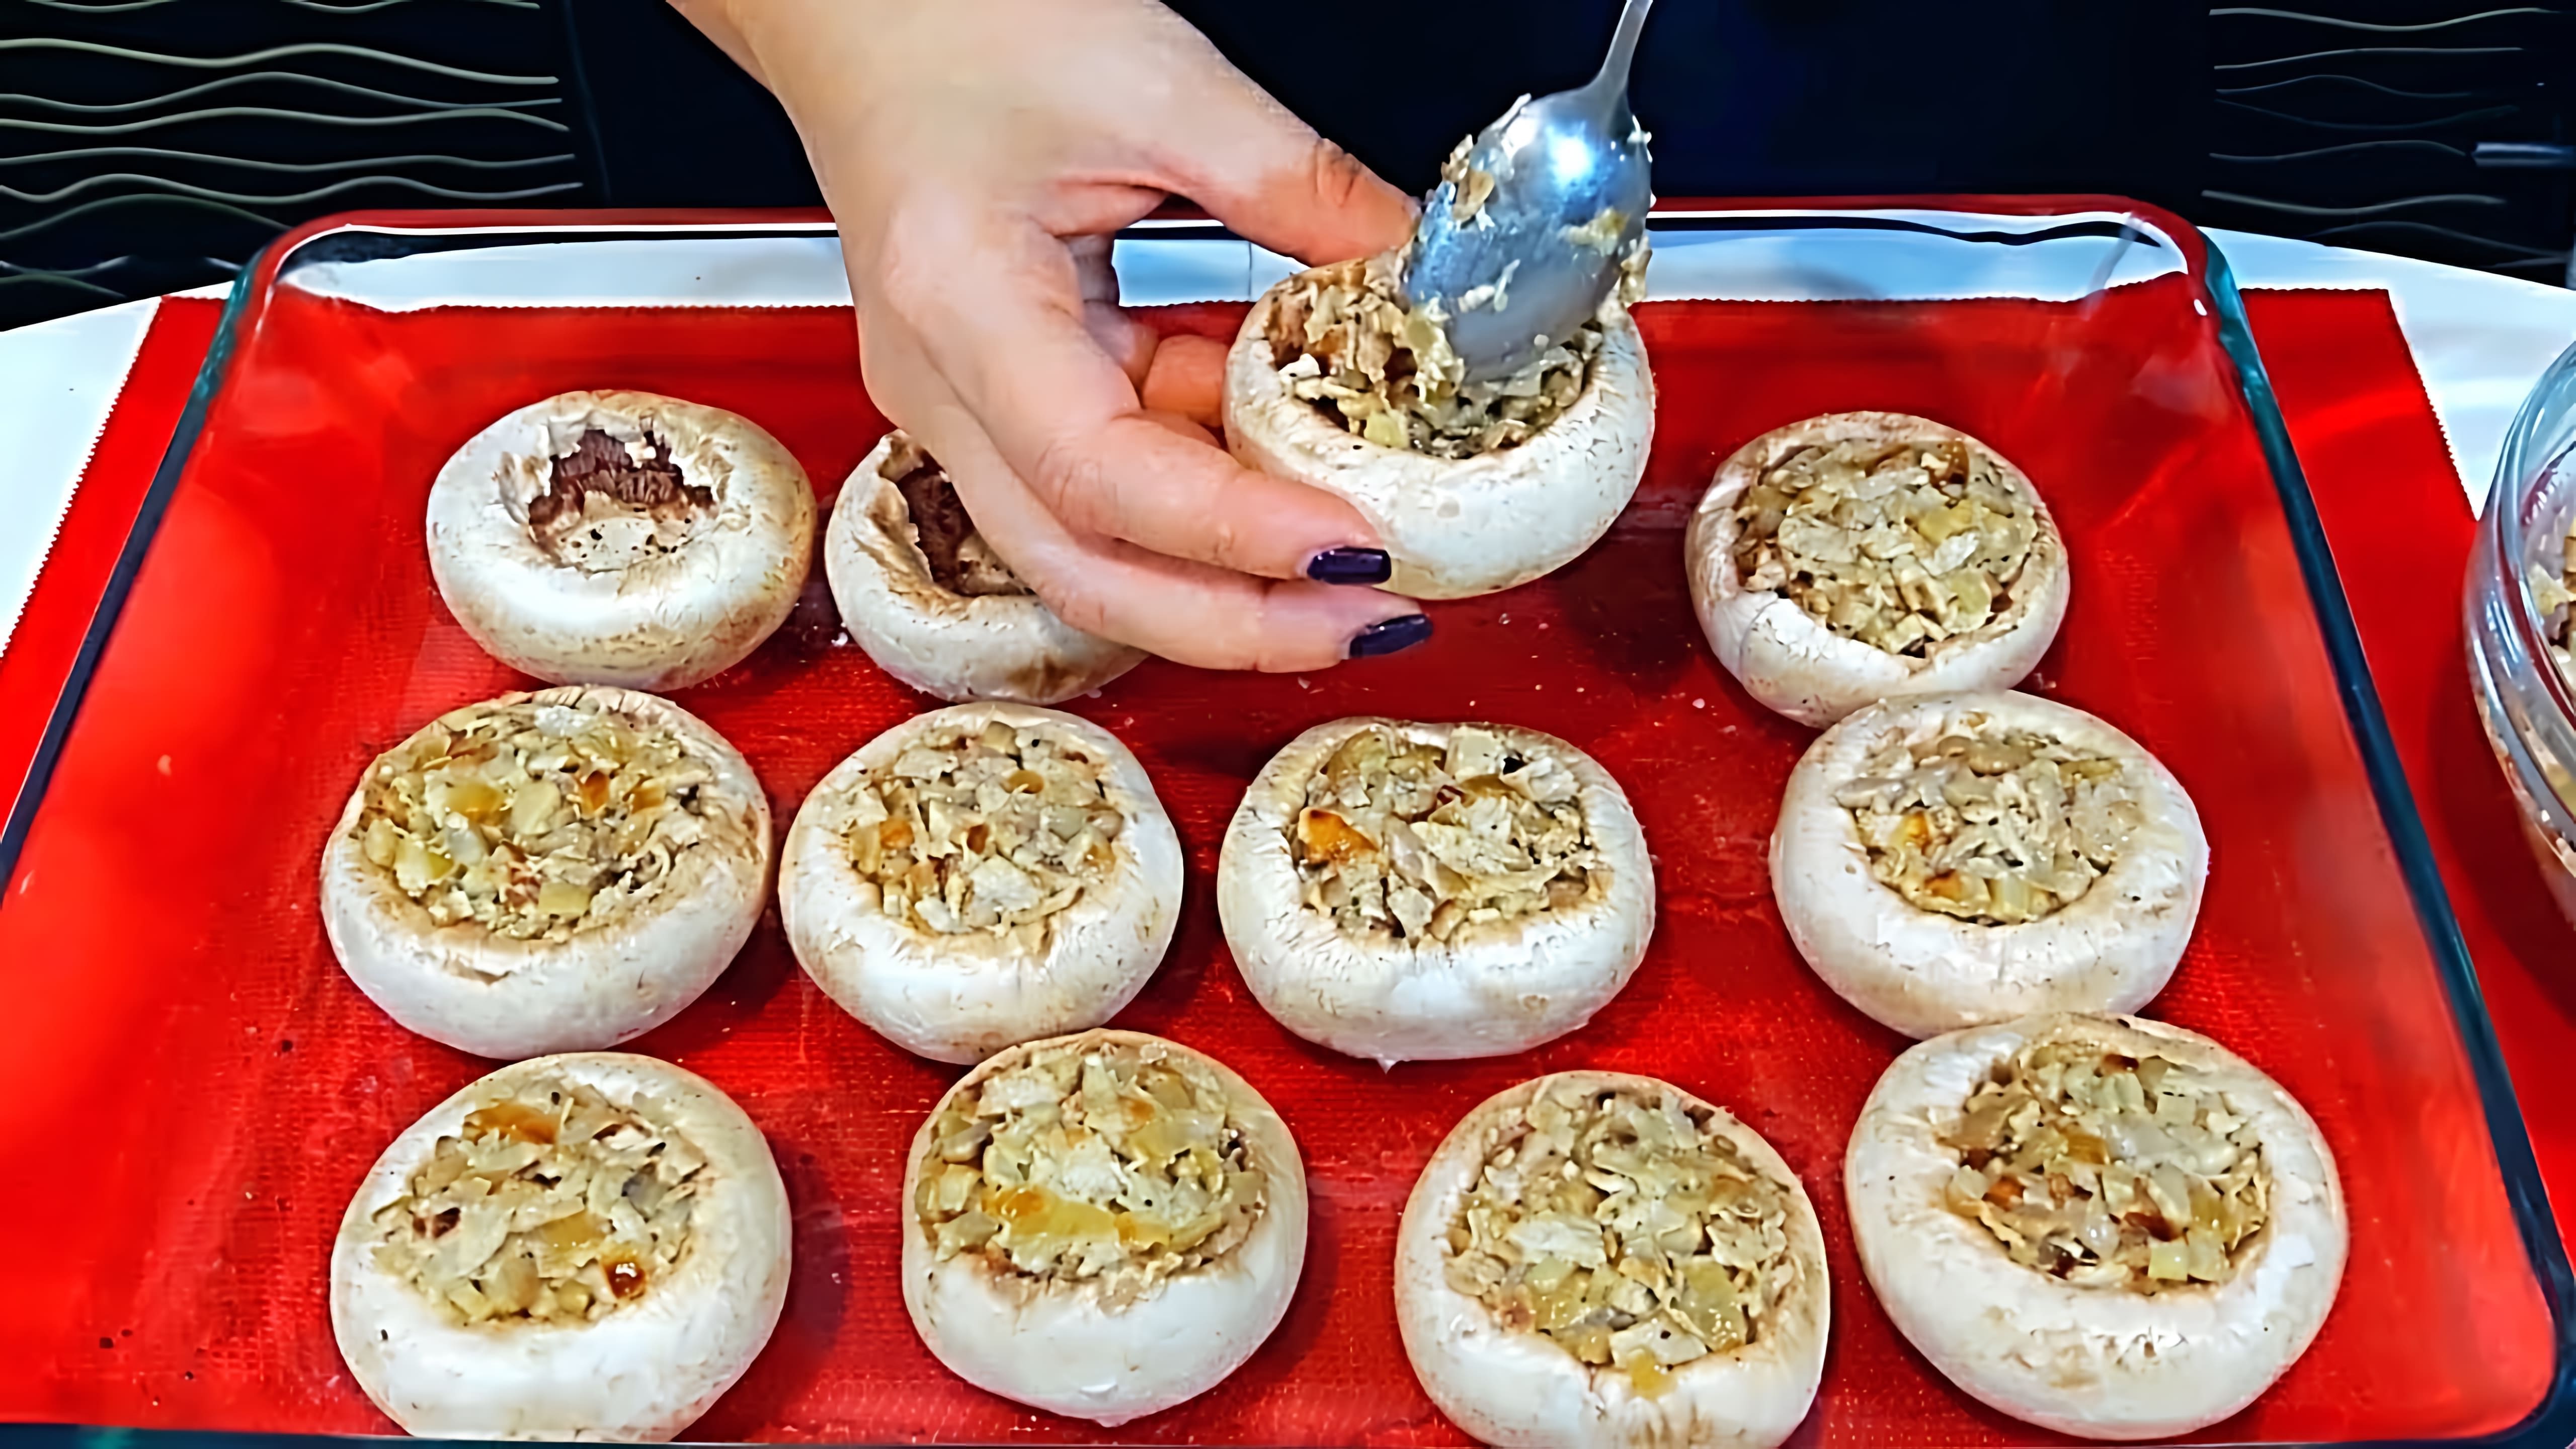 Видео как приготовить фаршированные грибы, которые создатель описывает как красивое и вкусное закусочное блюдо для праздников или повседневных приемов пищи